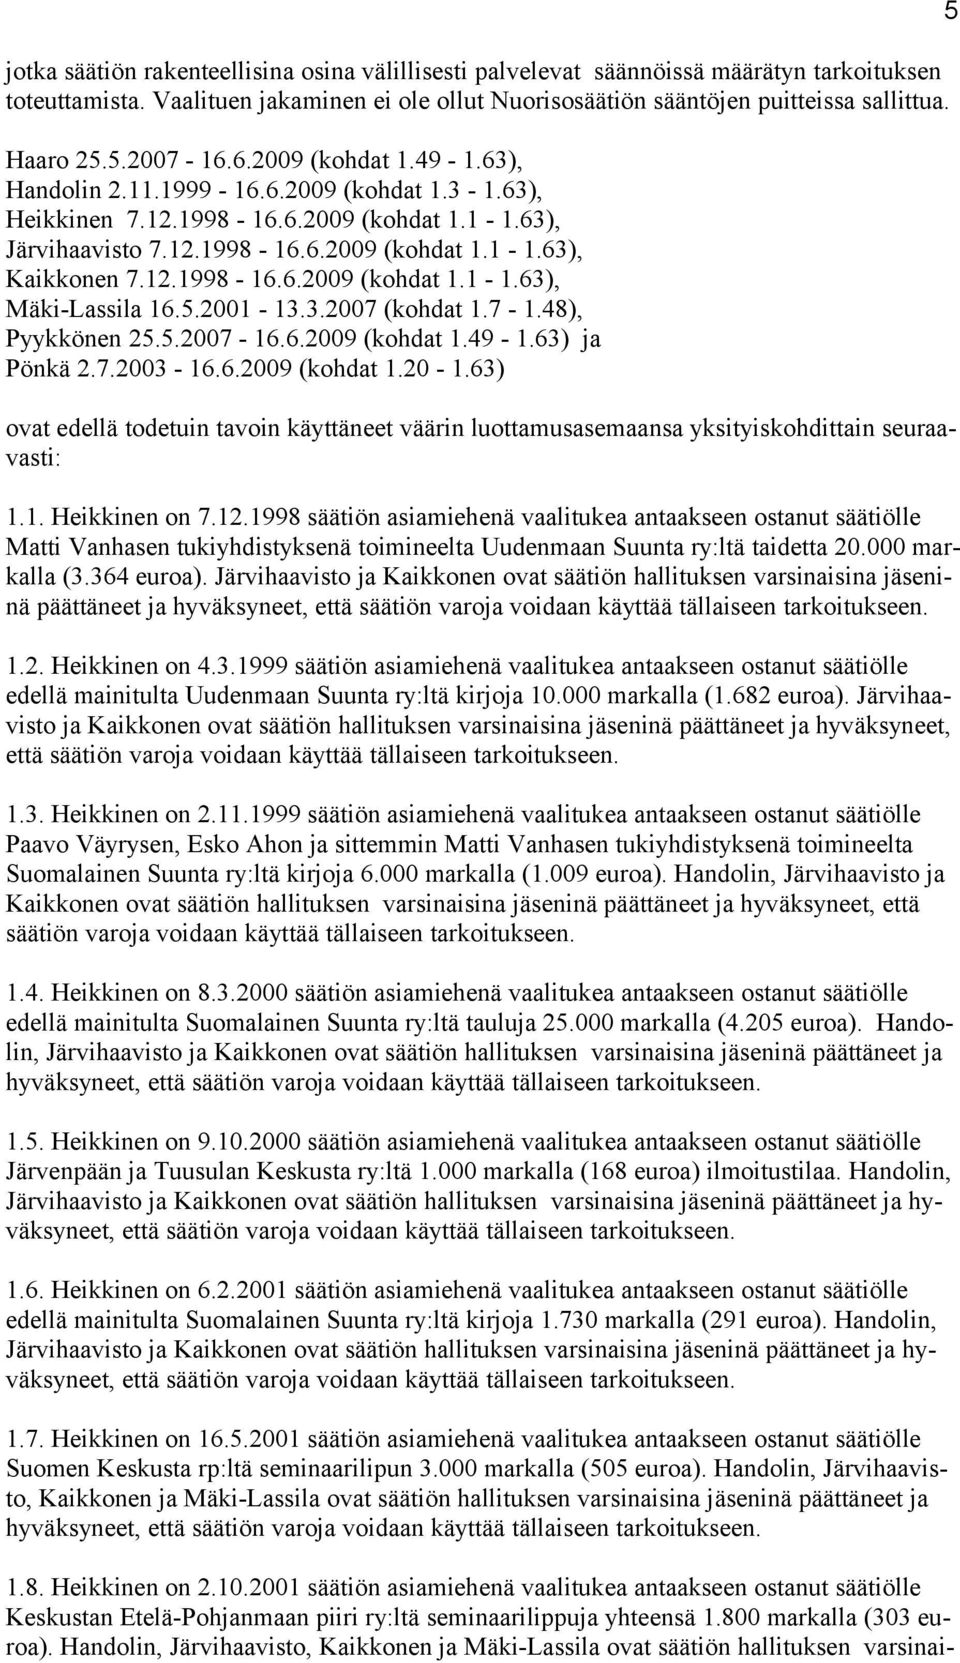 12.1998-16.6.2009 (kohdat 1.1-1.63), Mäki-Lassila 16.5.2001-13.3.2007 (kohdat 1.7-1.48), Pyykkönen 25.5.2007-16.6.2009 (kohdat 1.49-1.63) ja Pönkä 2.7.2003-16.6.2009 (kohdat 1.20-1.